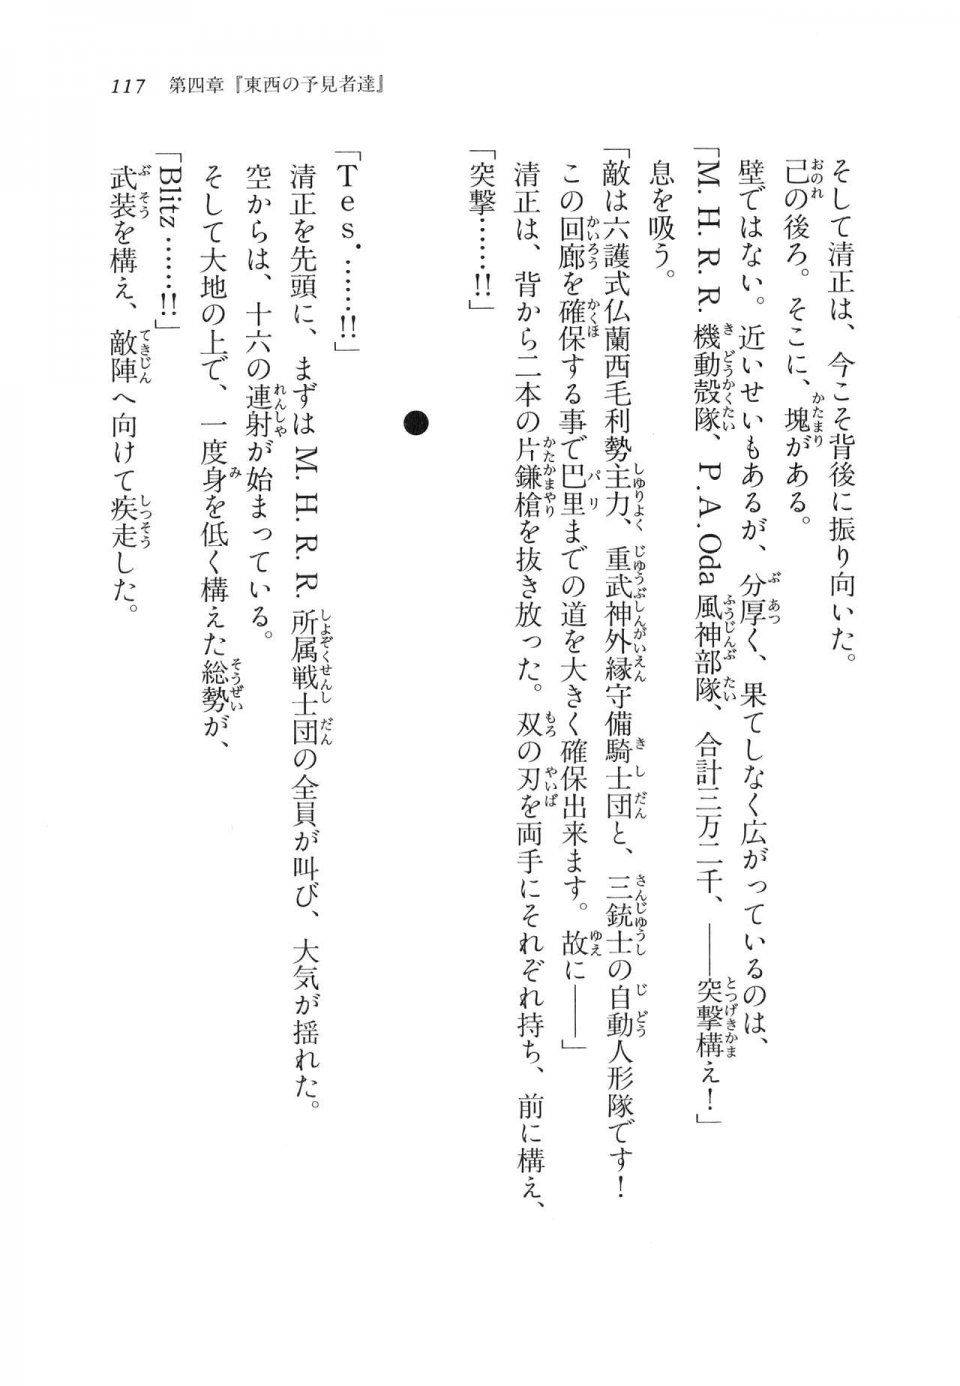 Kyoukai Senjou no Horizon LN Vol 11(5A) - Photo #117